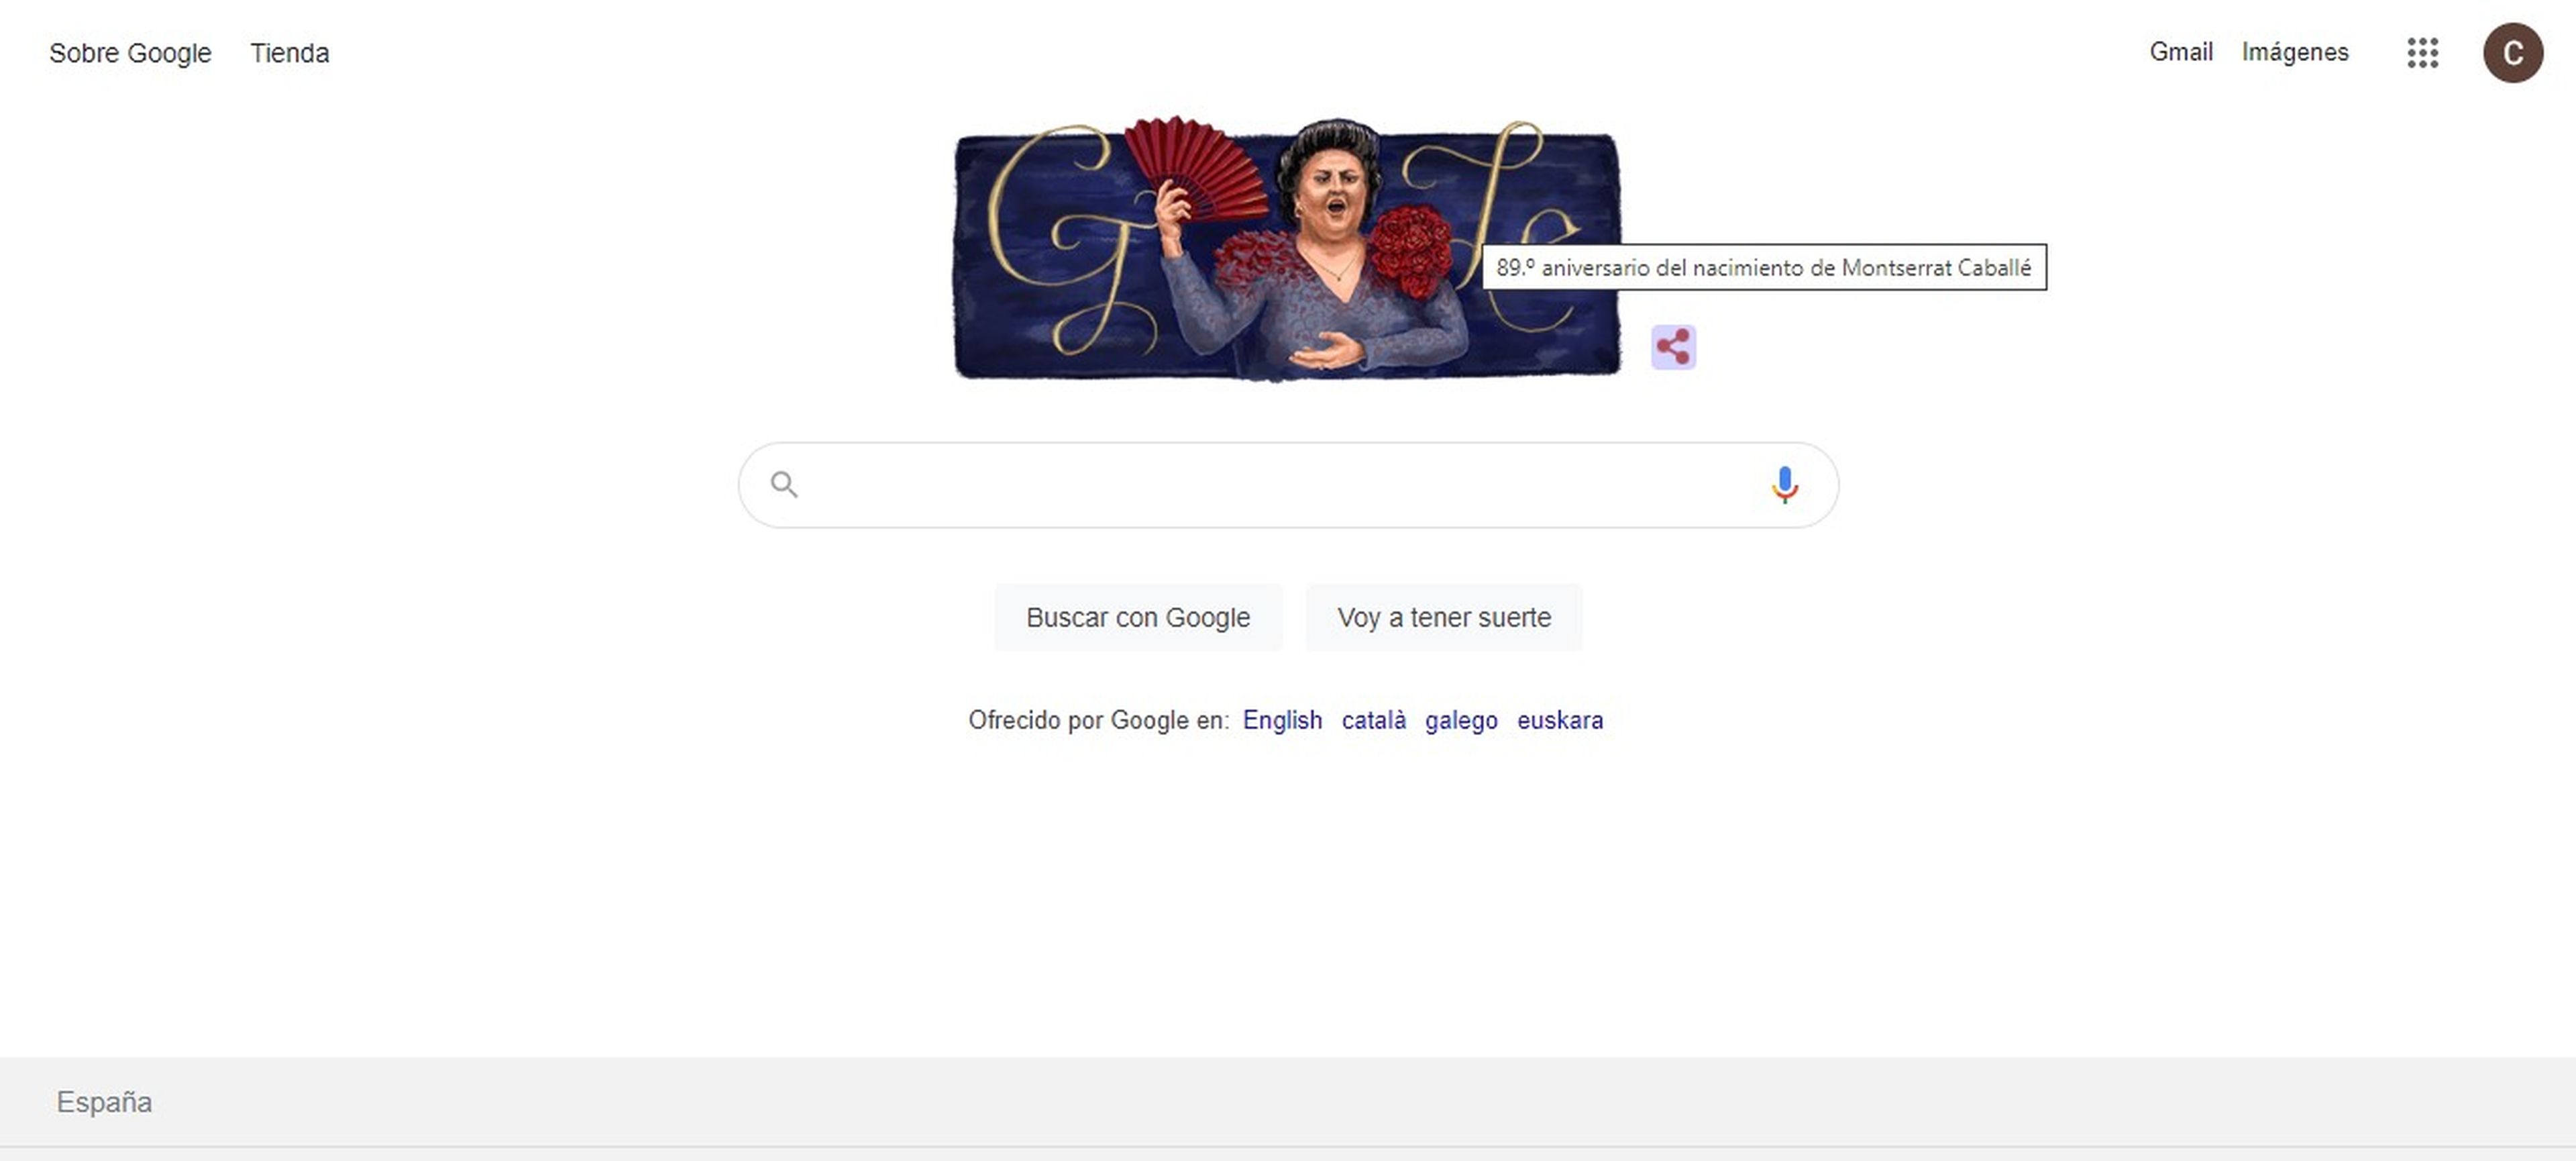 Google dedica a Montserrat Caballé el doodle de hoy por sus 89 años